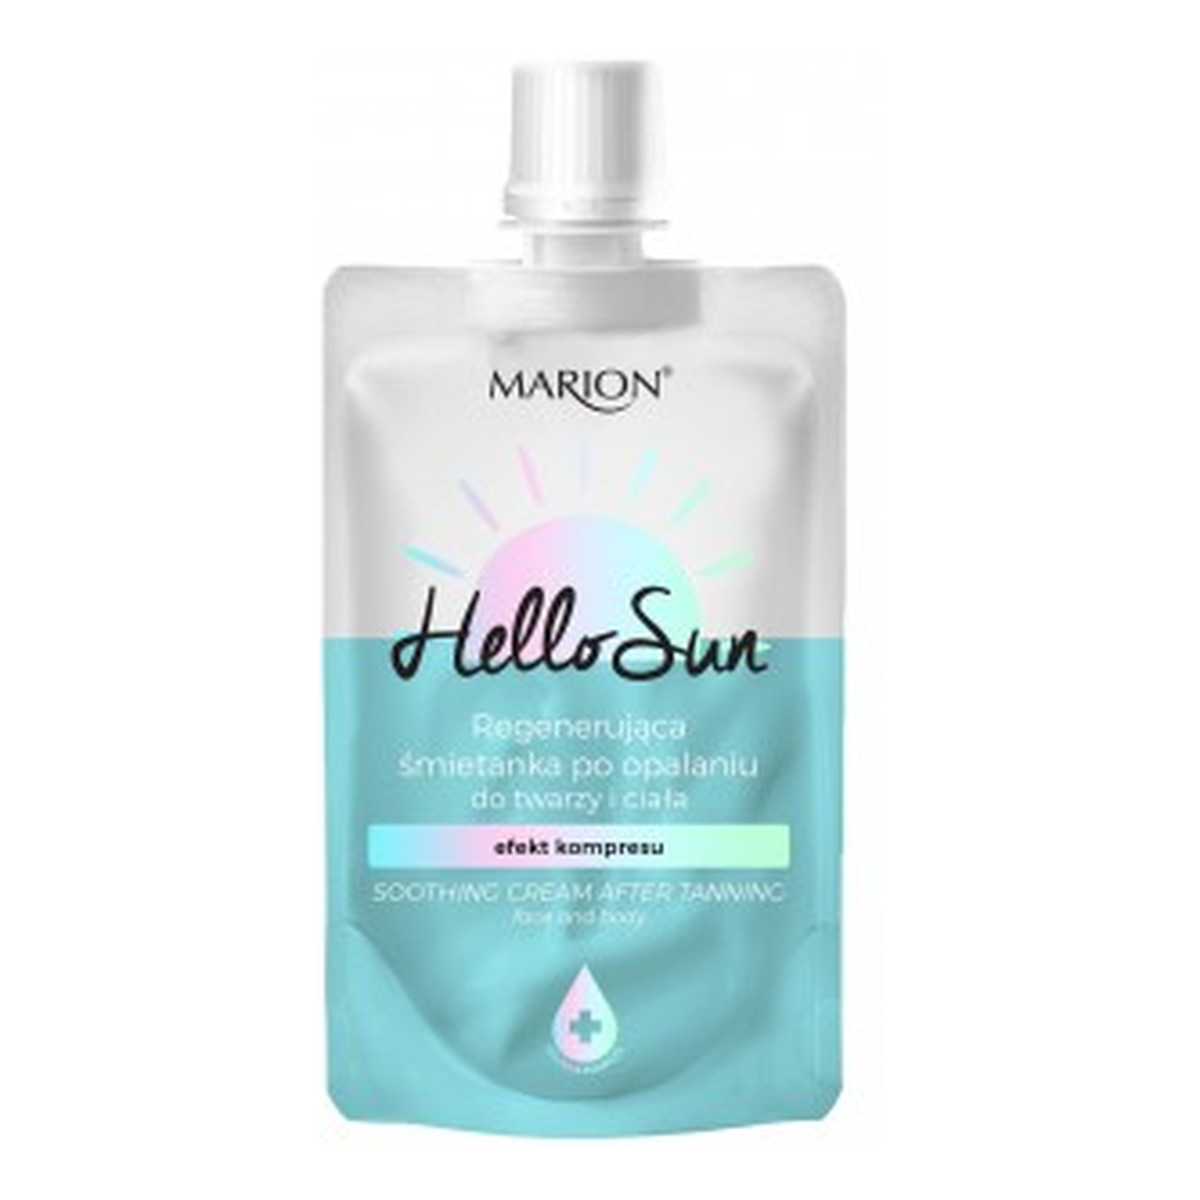 Marion Hello sun regenerująca śmietanka po opalaniu do twarzy i ciała z efektem kompresu 50ml